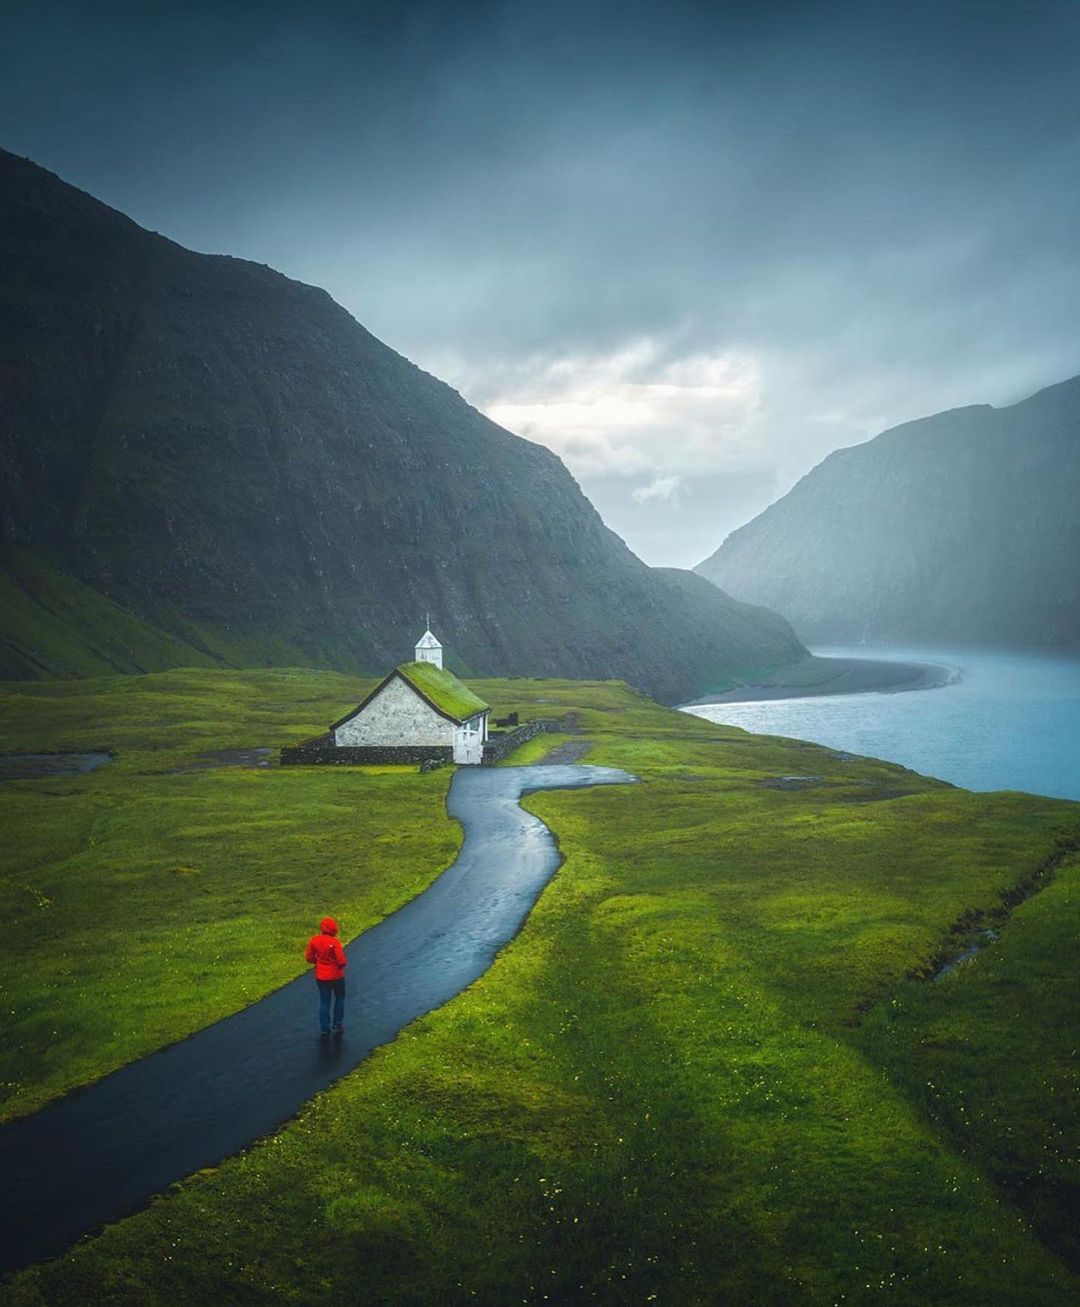 طبیعت مه گرفته و رویایی ایسلند! + عکس